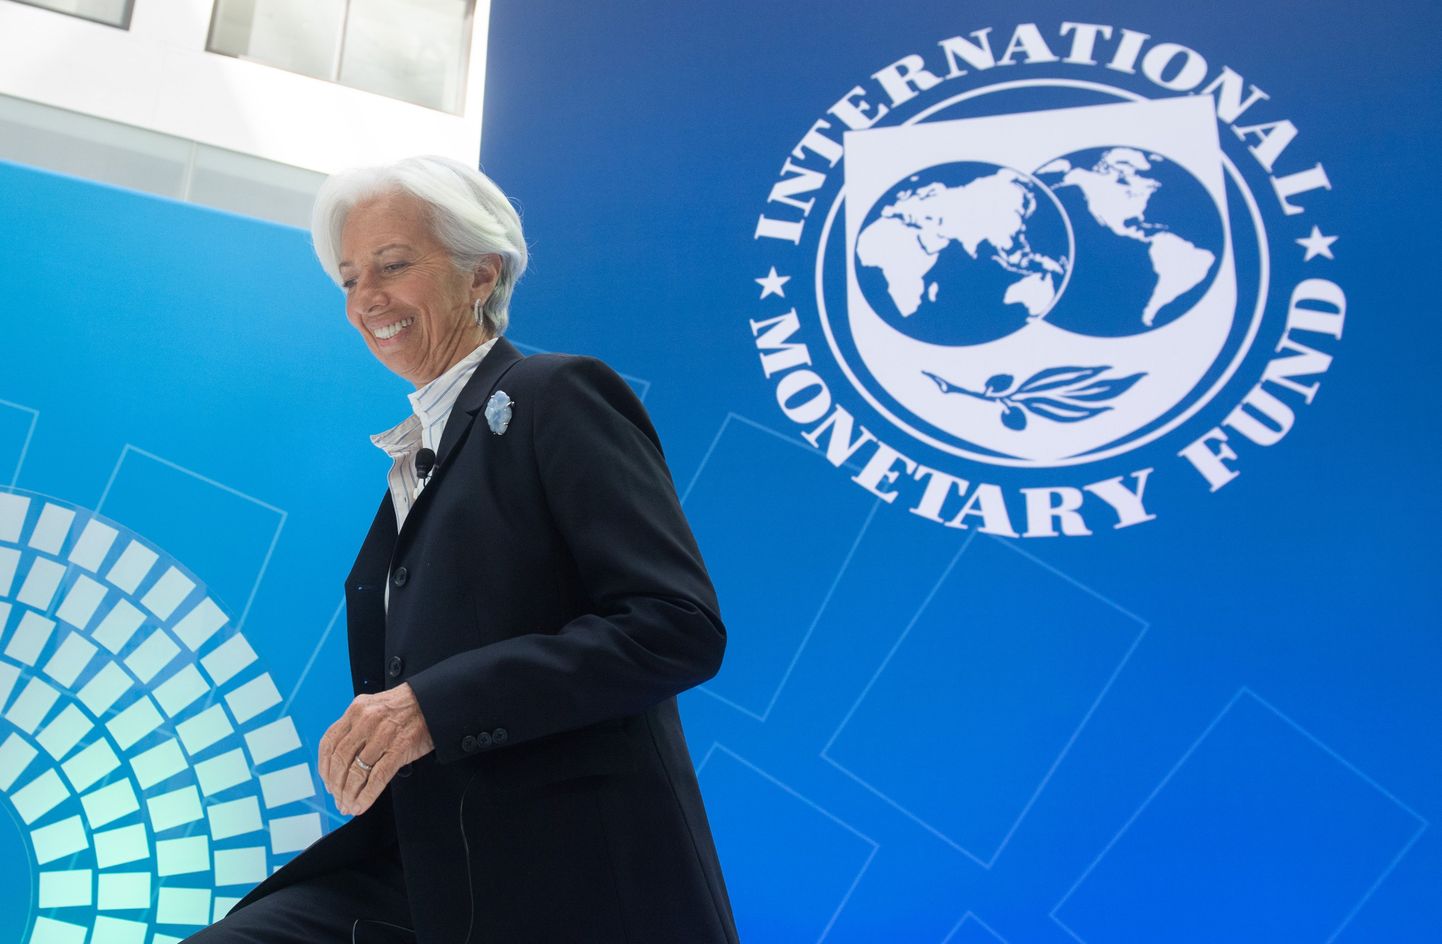 IMFi praegune peadirektor Christine Lagarde asub juhtima Euroopa Keskpanka. Temast vabaks jäävat ametikohta noolivad ka soomlased.